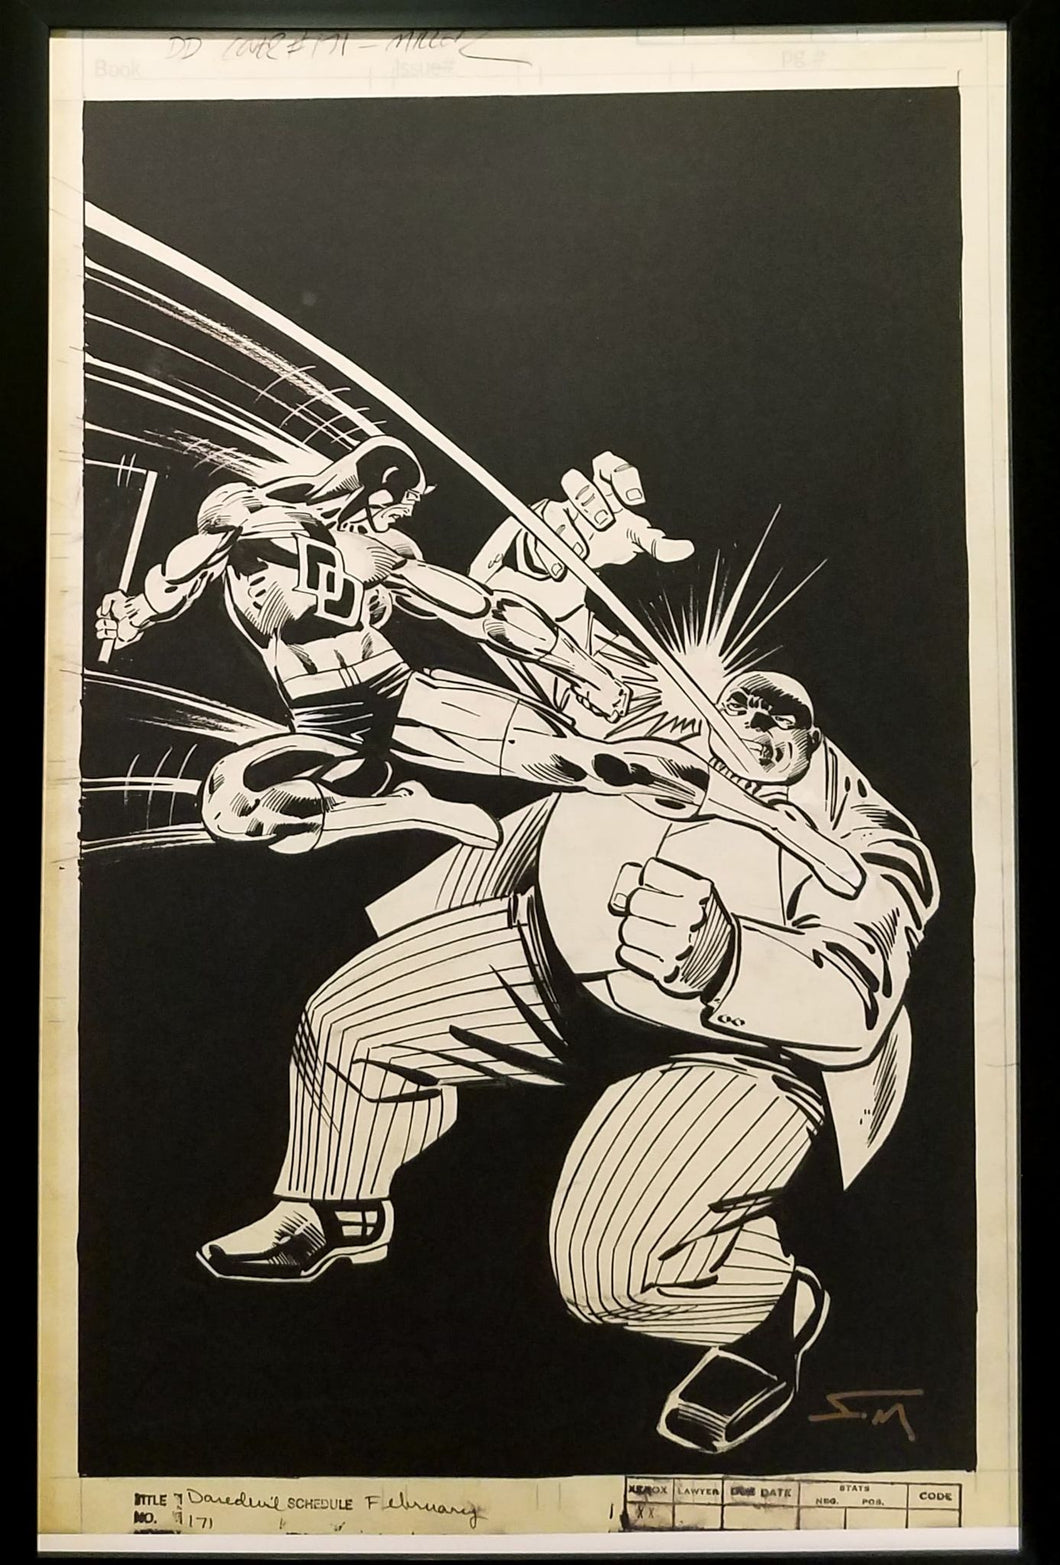 Daredevil #171 by Frank Miller 11x17 FRAMED Original Art Poster Marvel Comics